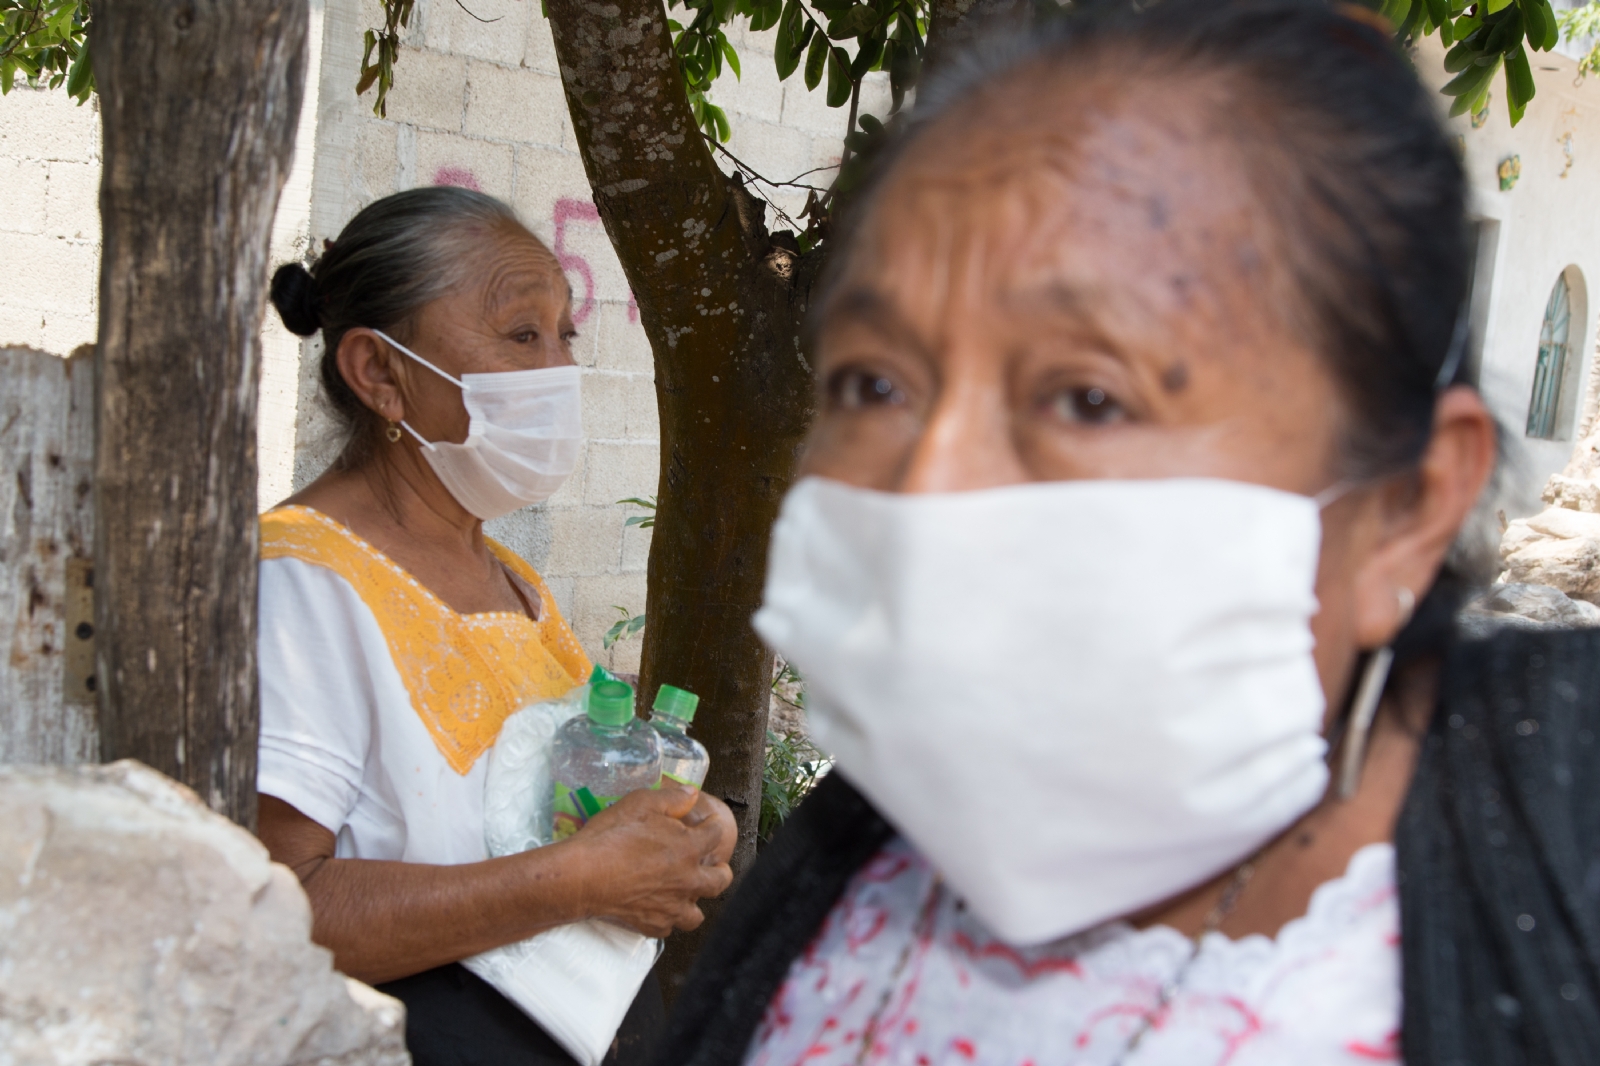 Población indígena, los más afectados por COVID-19 en Yucatán: INEGI